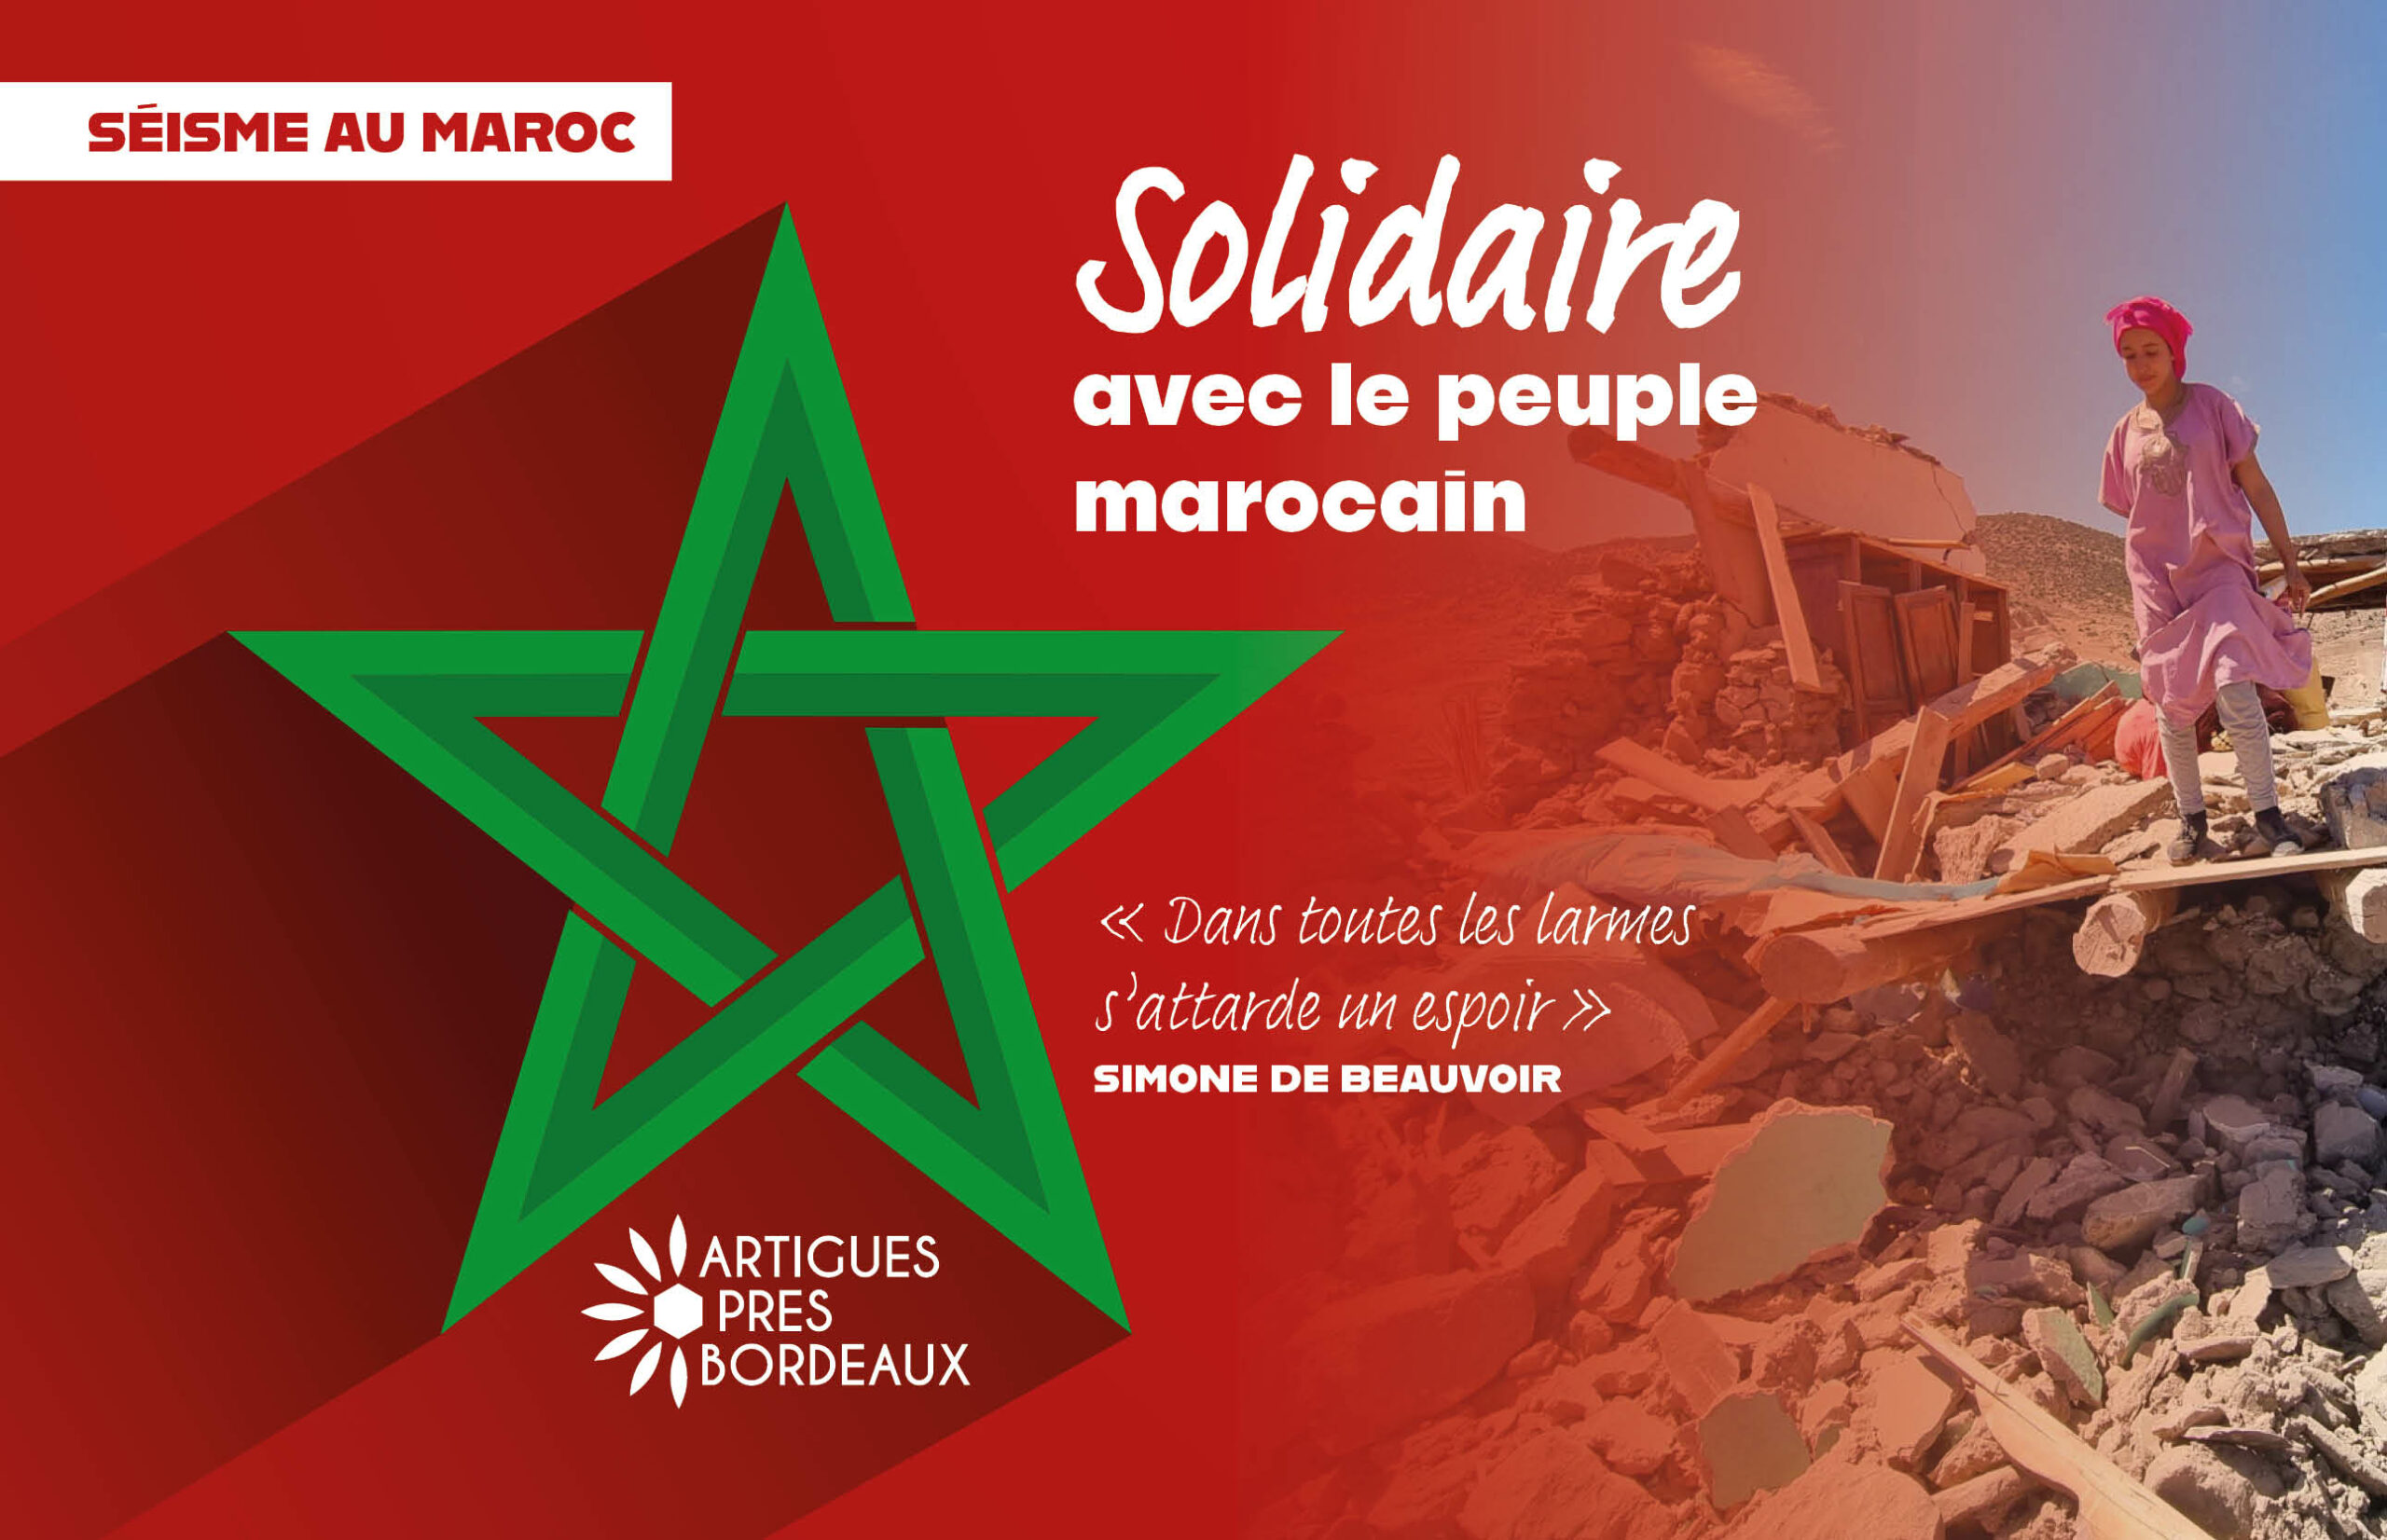 Séisme au Maroc / Solidarité et appel aux dons